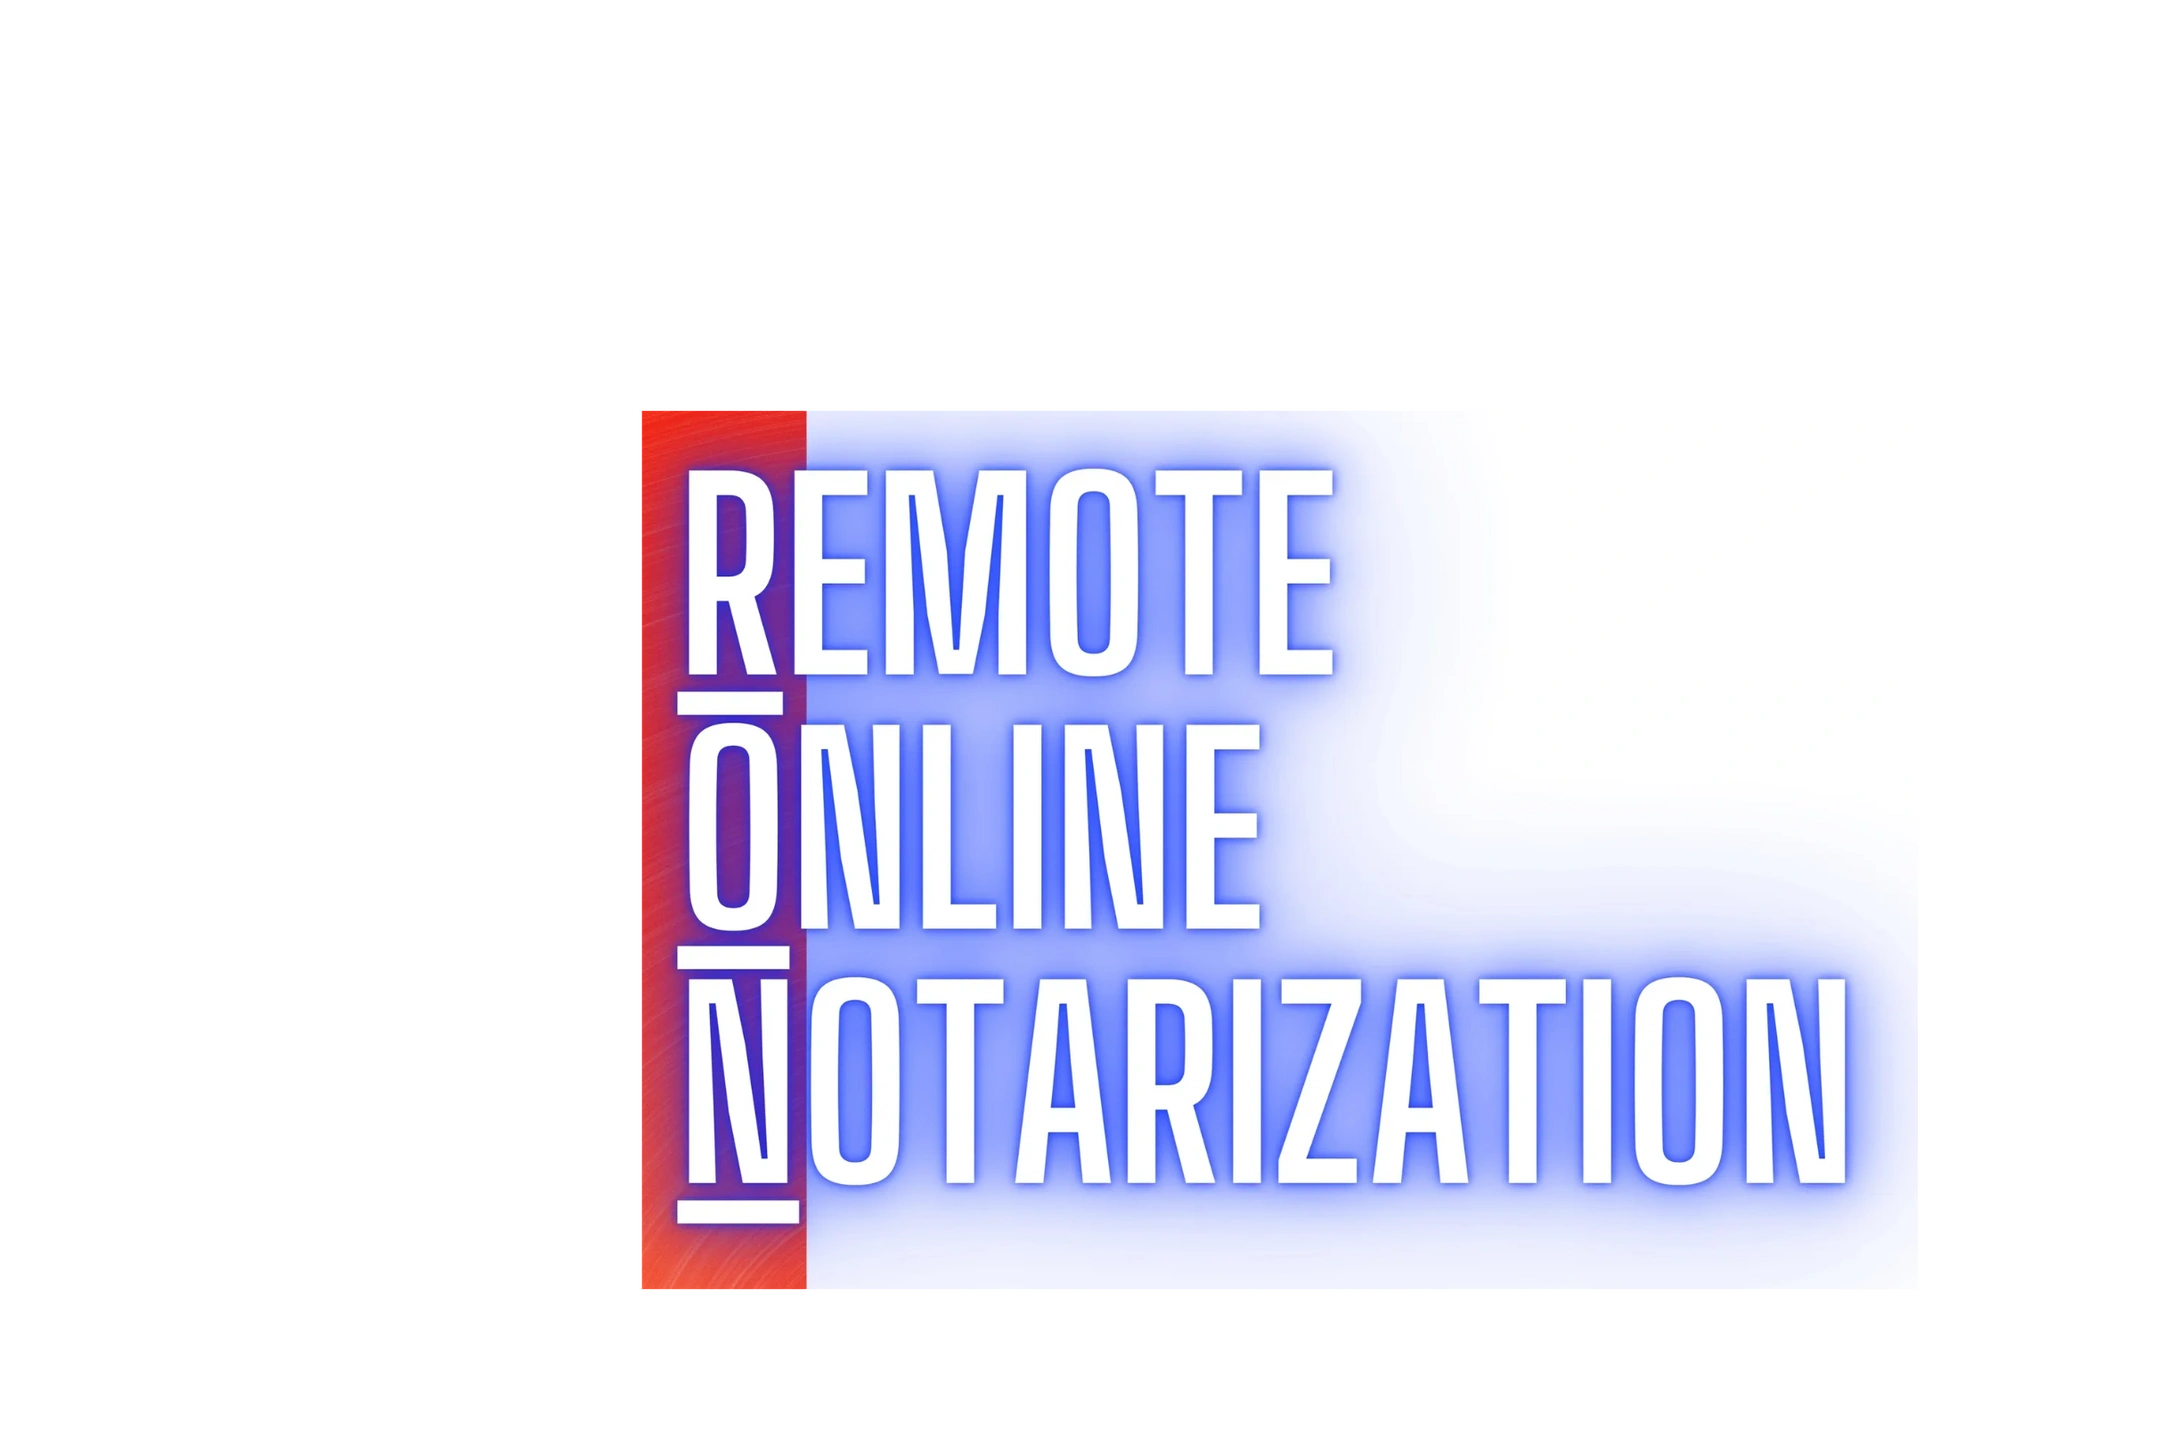 Online notary TN
Online notarization TN
notarize TN
IPEN notary
e-notary Nashville
virtual notary TN